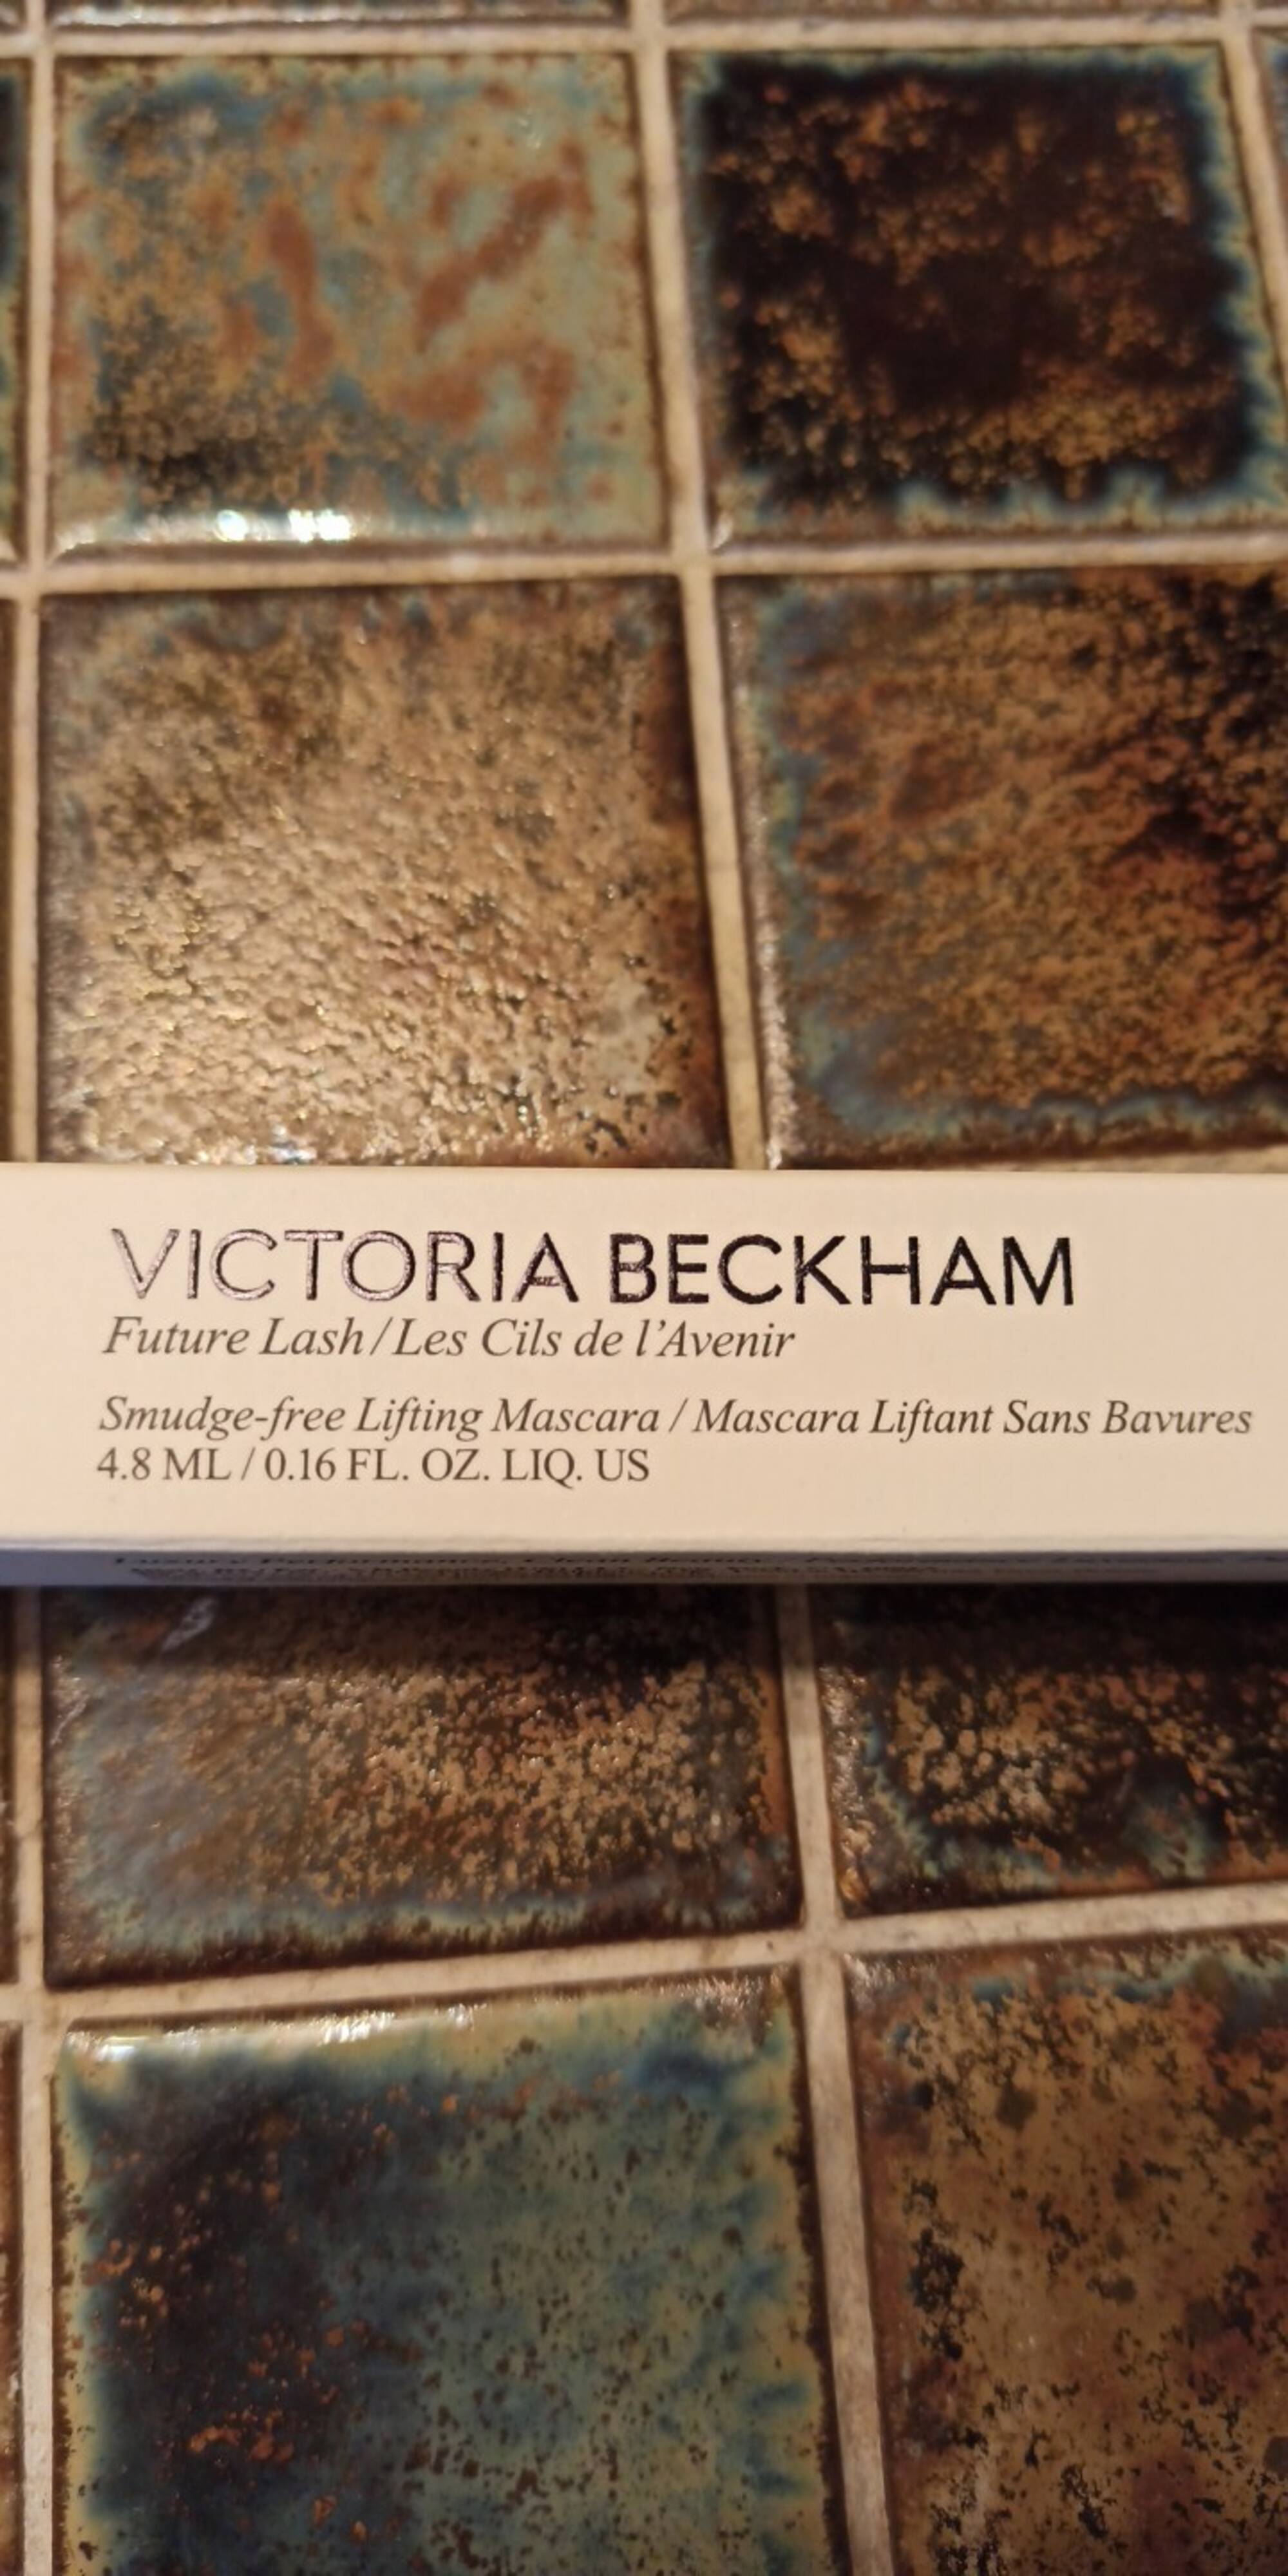 VICTORIA BECKHAM - Les cils de l'avenir - Mascara liftant sans bavures